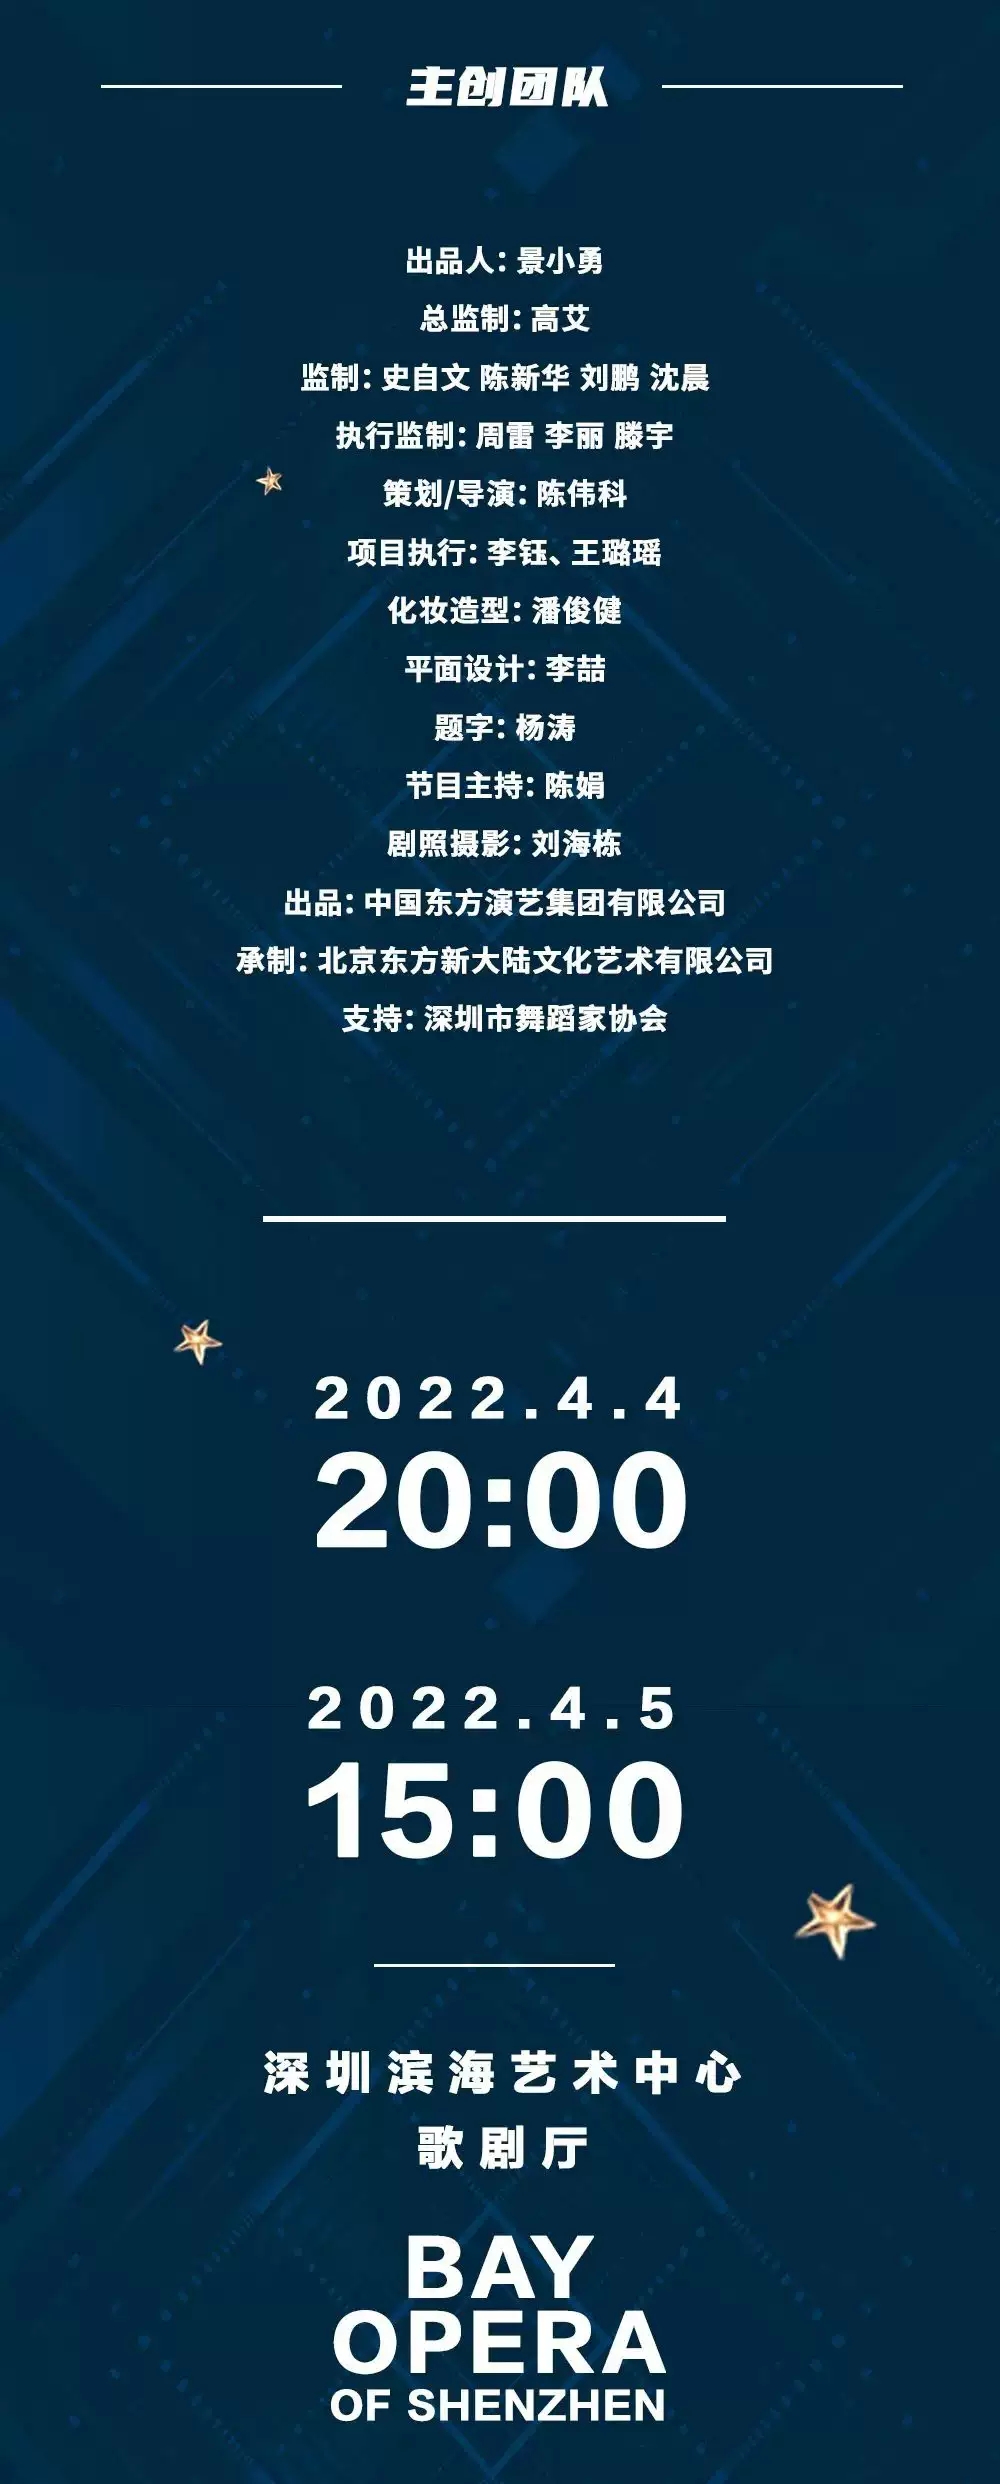 2022国粹华风·中国东方和她的朋友们舞蹈全明星GALA-深圳站